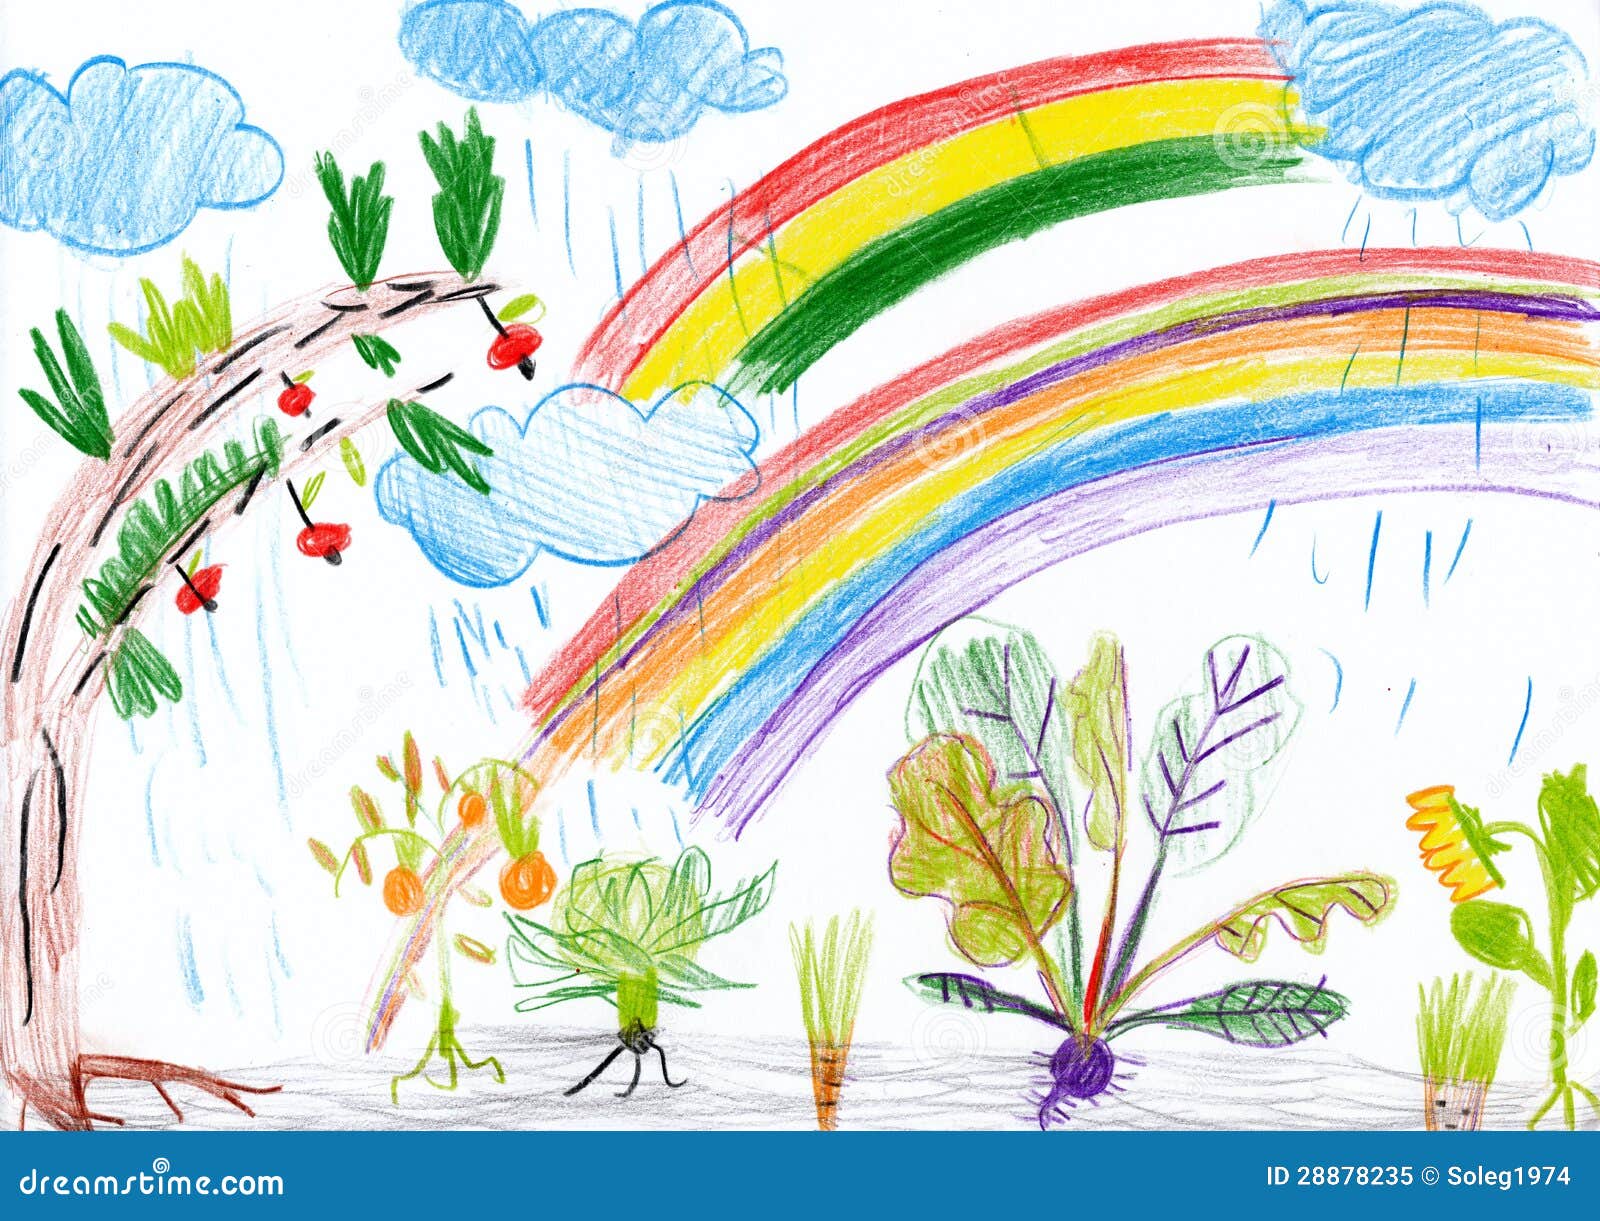 Landschap Met Regenboog. Kind Tekening. Stock Illustratie - Illustratie bestaande uit wolk, verf ...